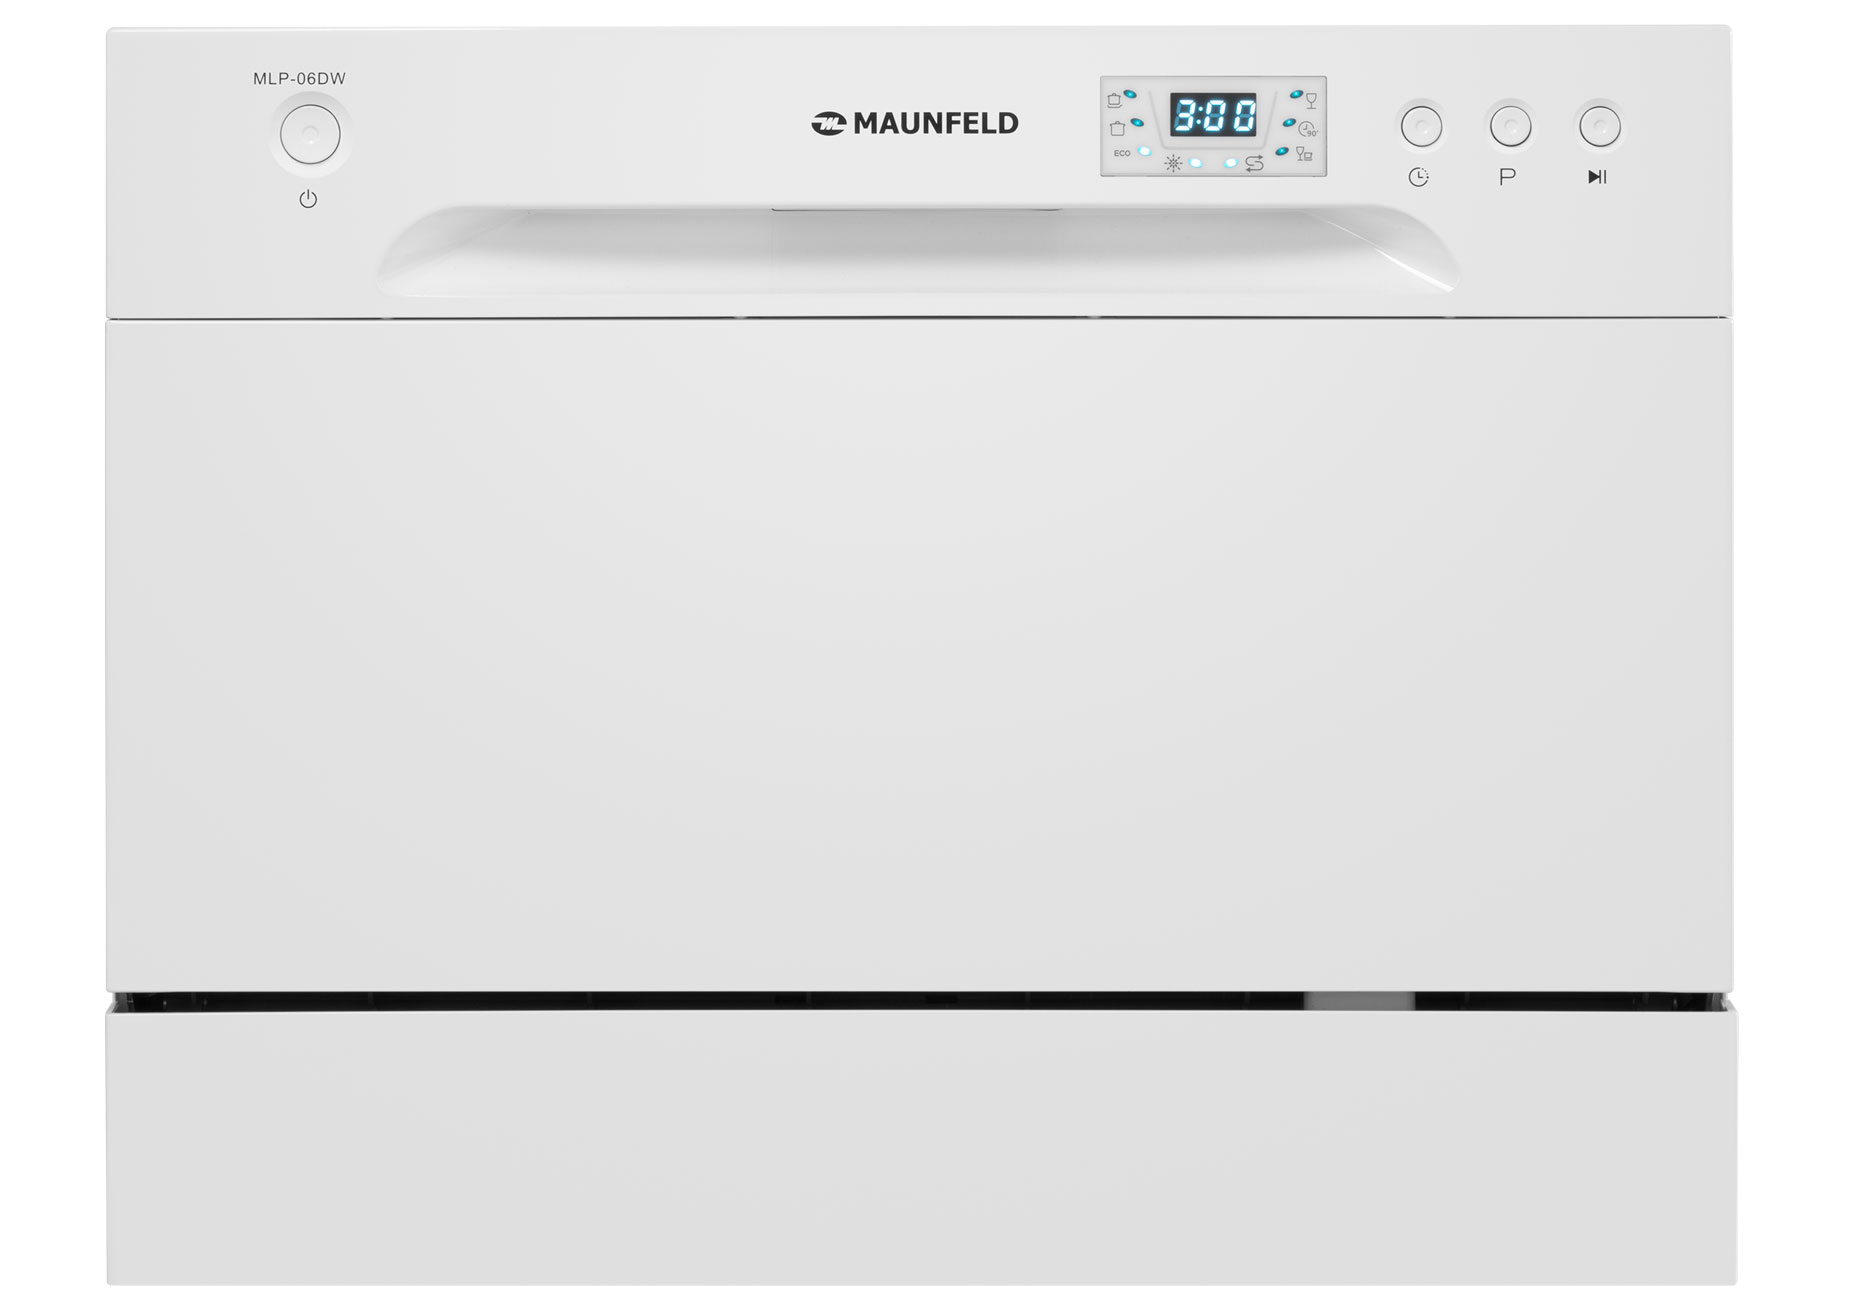 Посудомоечная машина MAUNFELD MLP-06DW белый встраиваемая посудомоечная машина kitll kdi 6001 60см 6 программ нержавеющая сталь